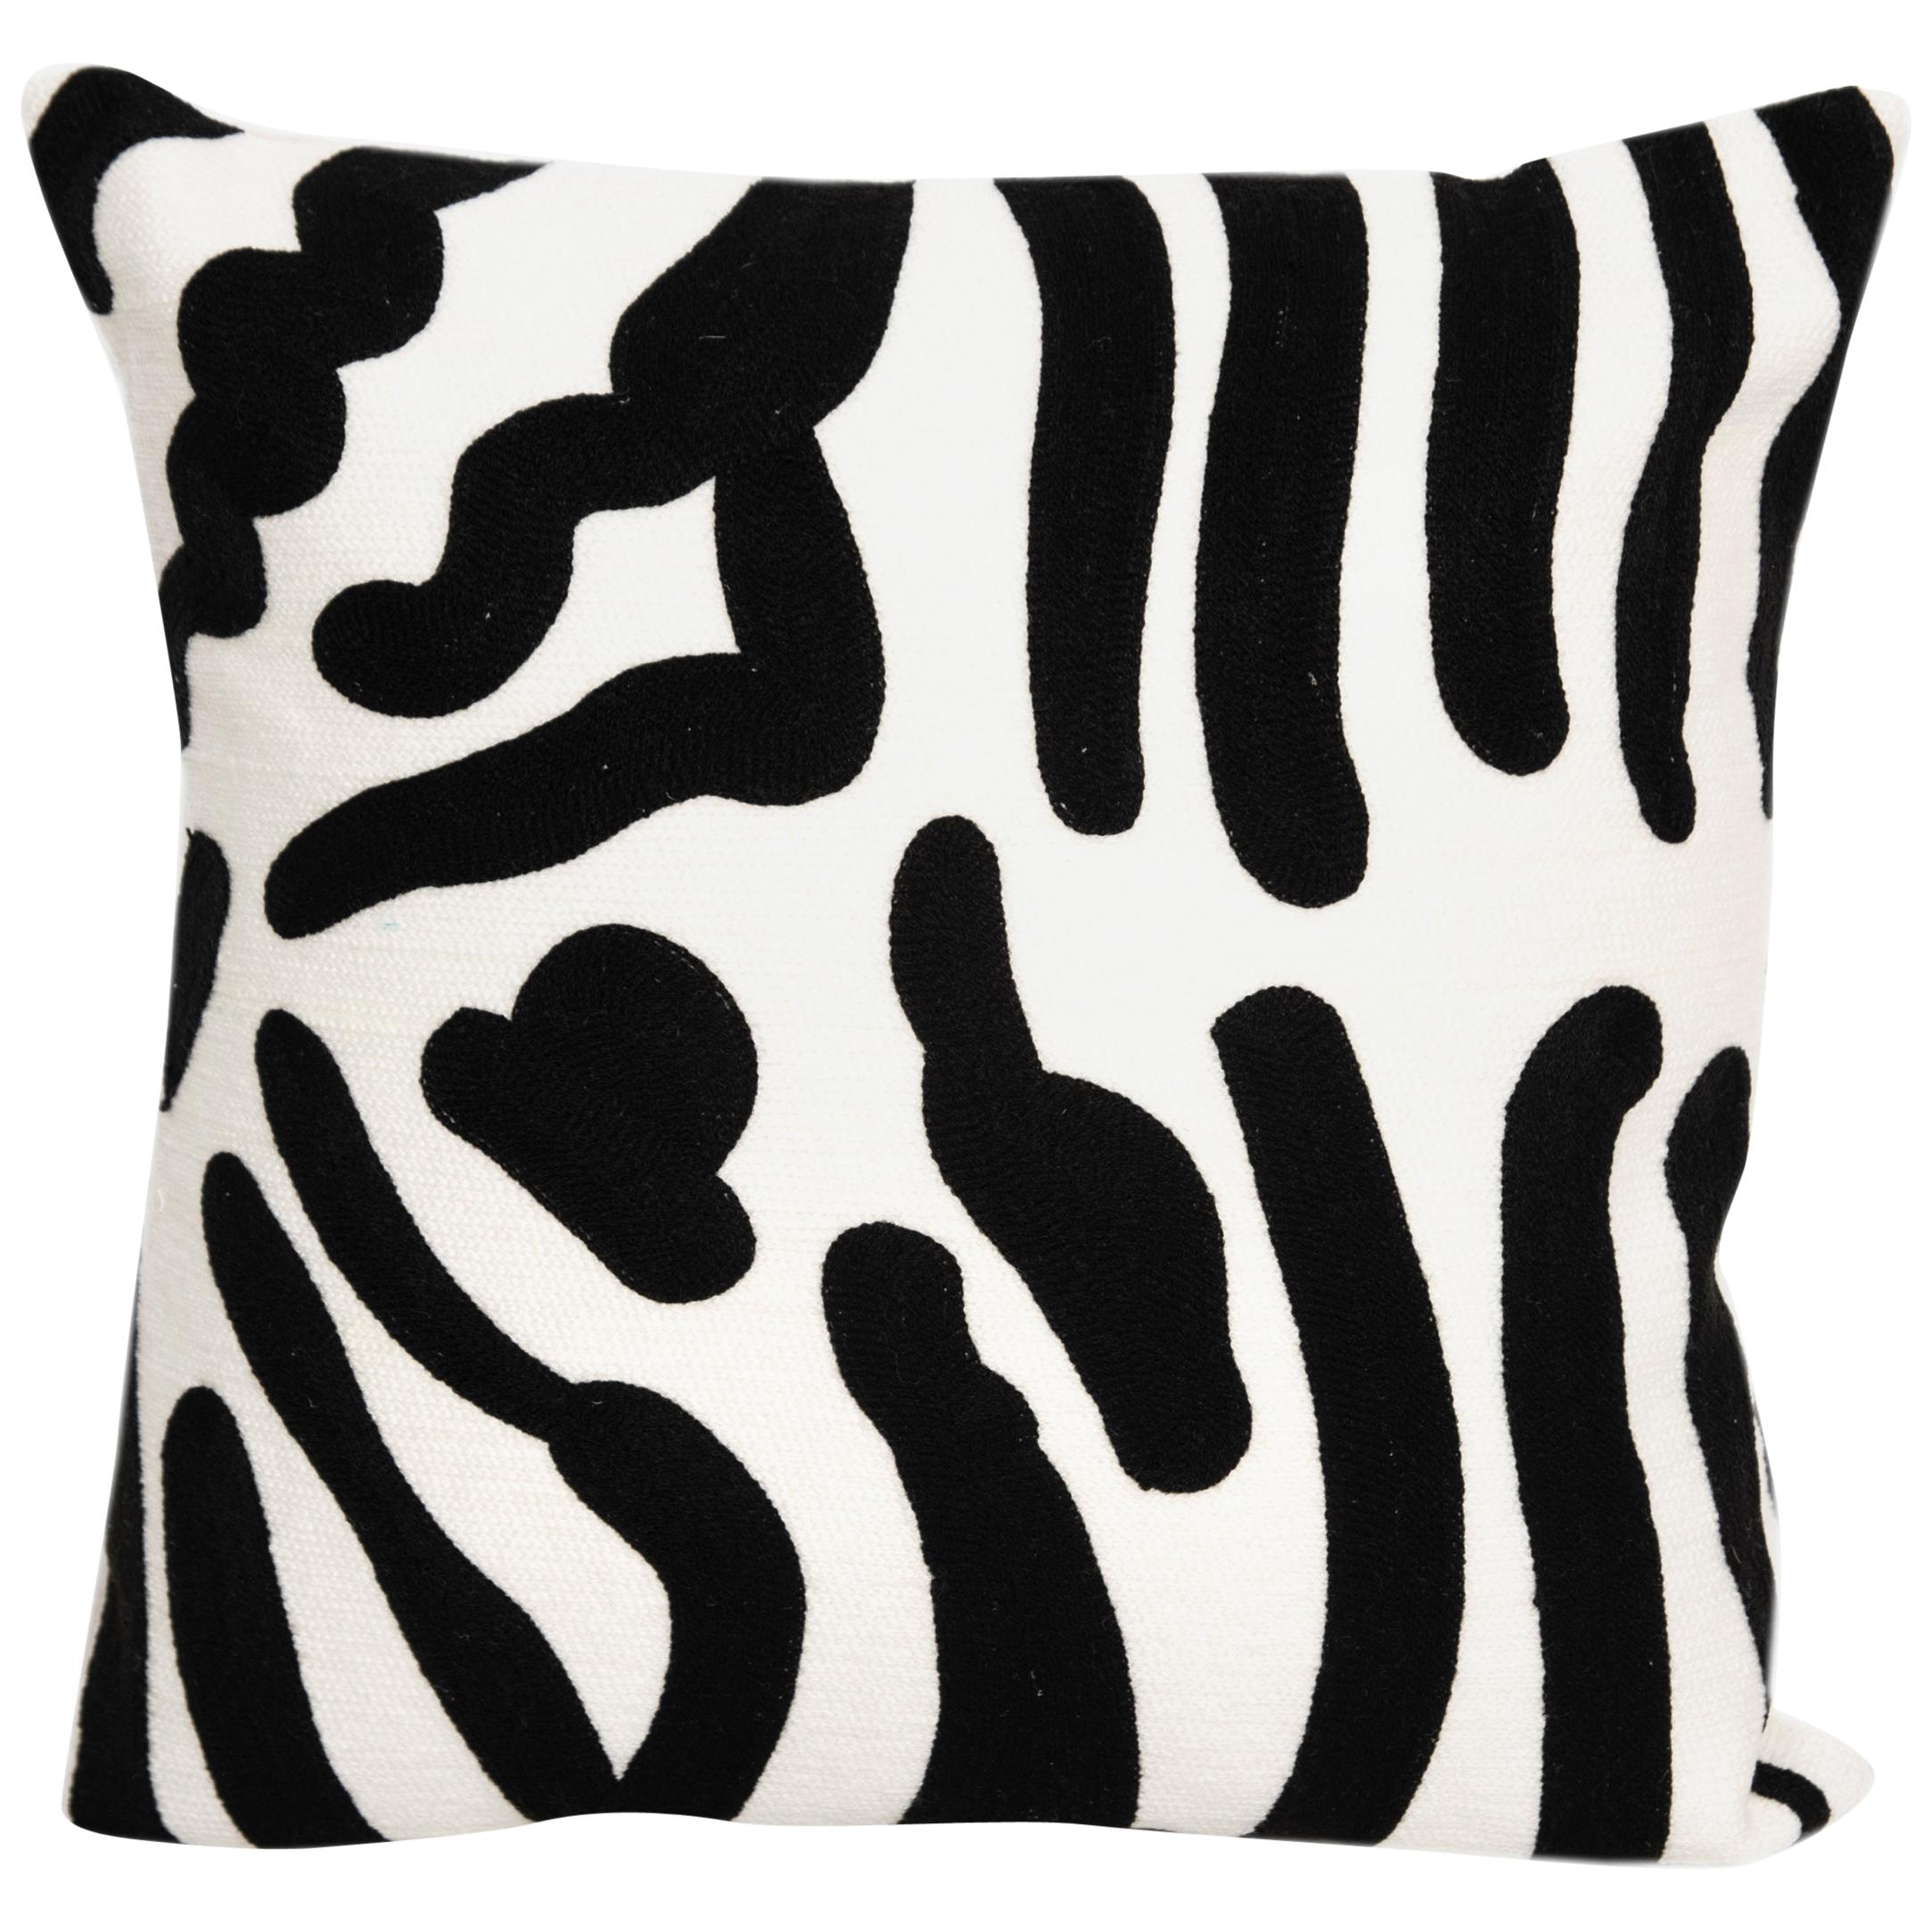 Zeitgenössische moderne Stickerei Kissen Cushion Baumwolle Tierdruck Schwarz Weiß